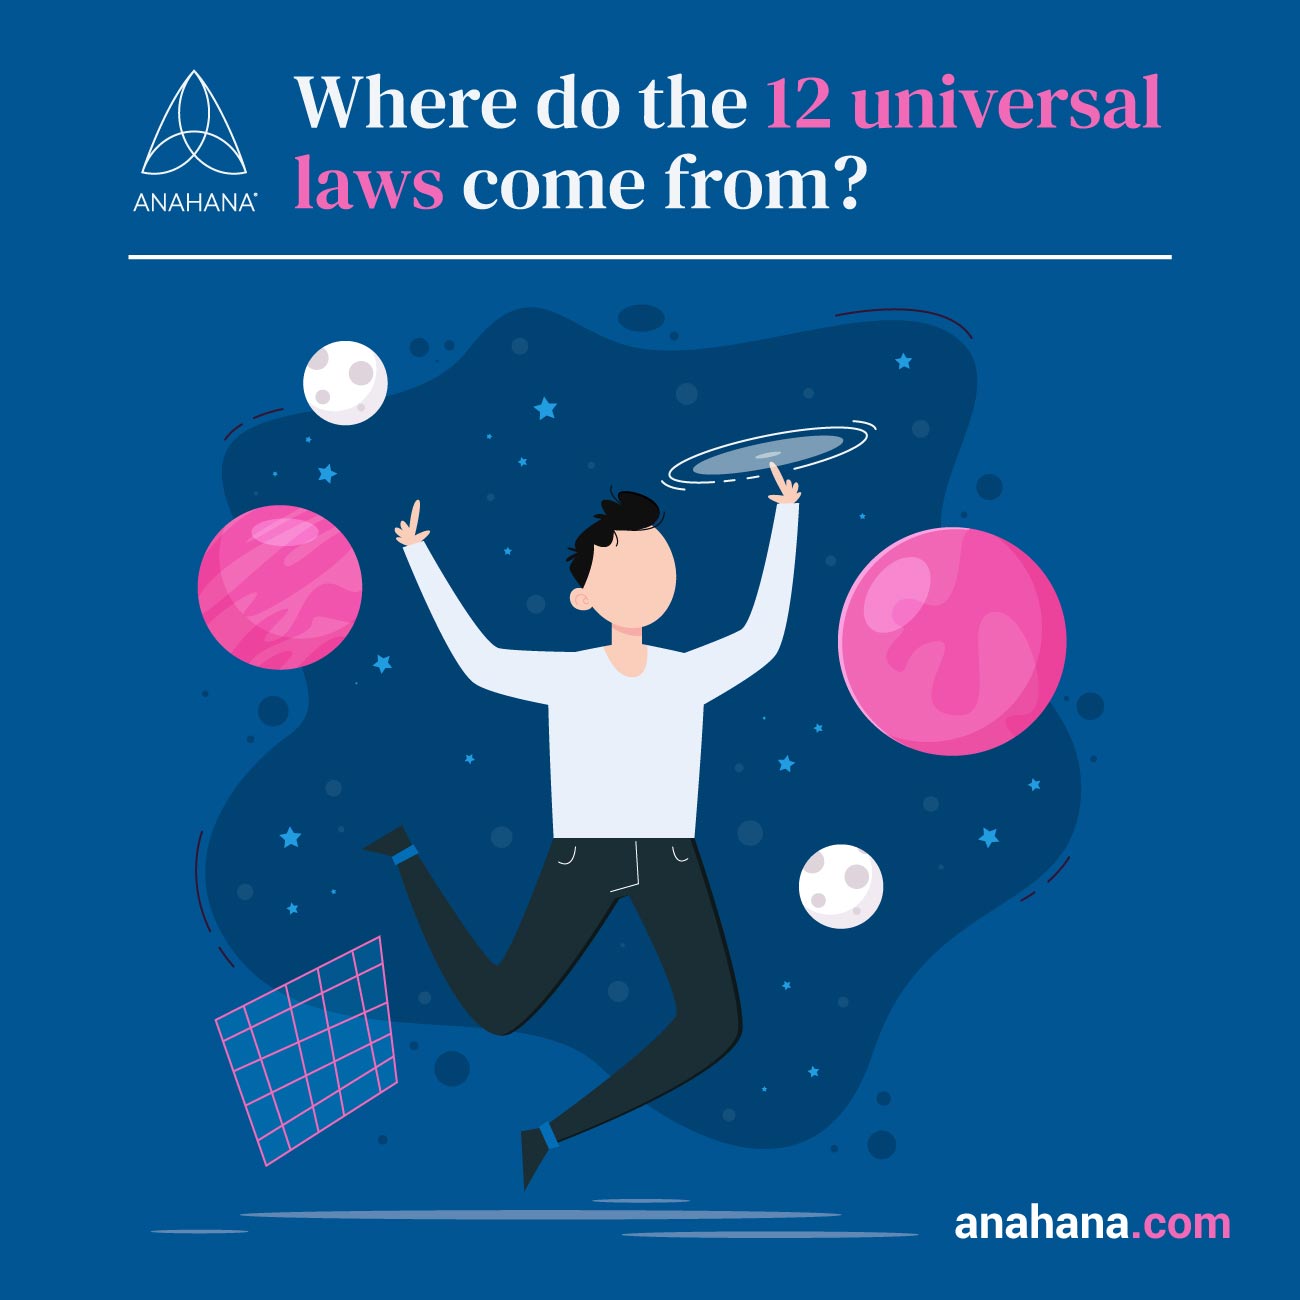 de onde vêm as 12 leis universais